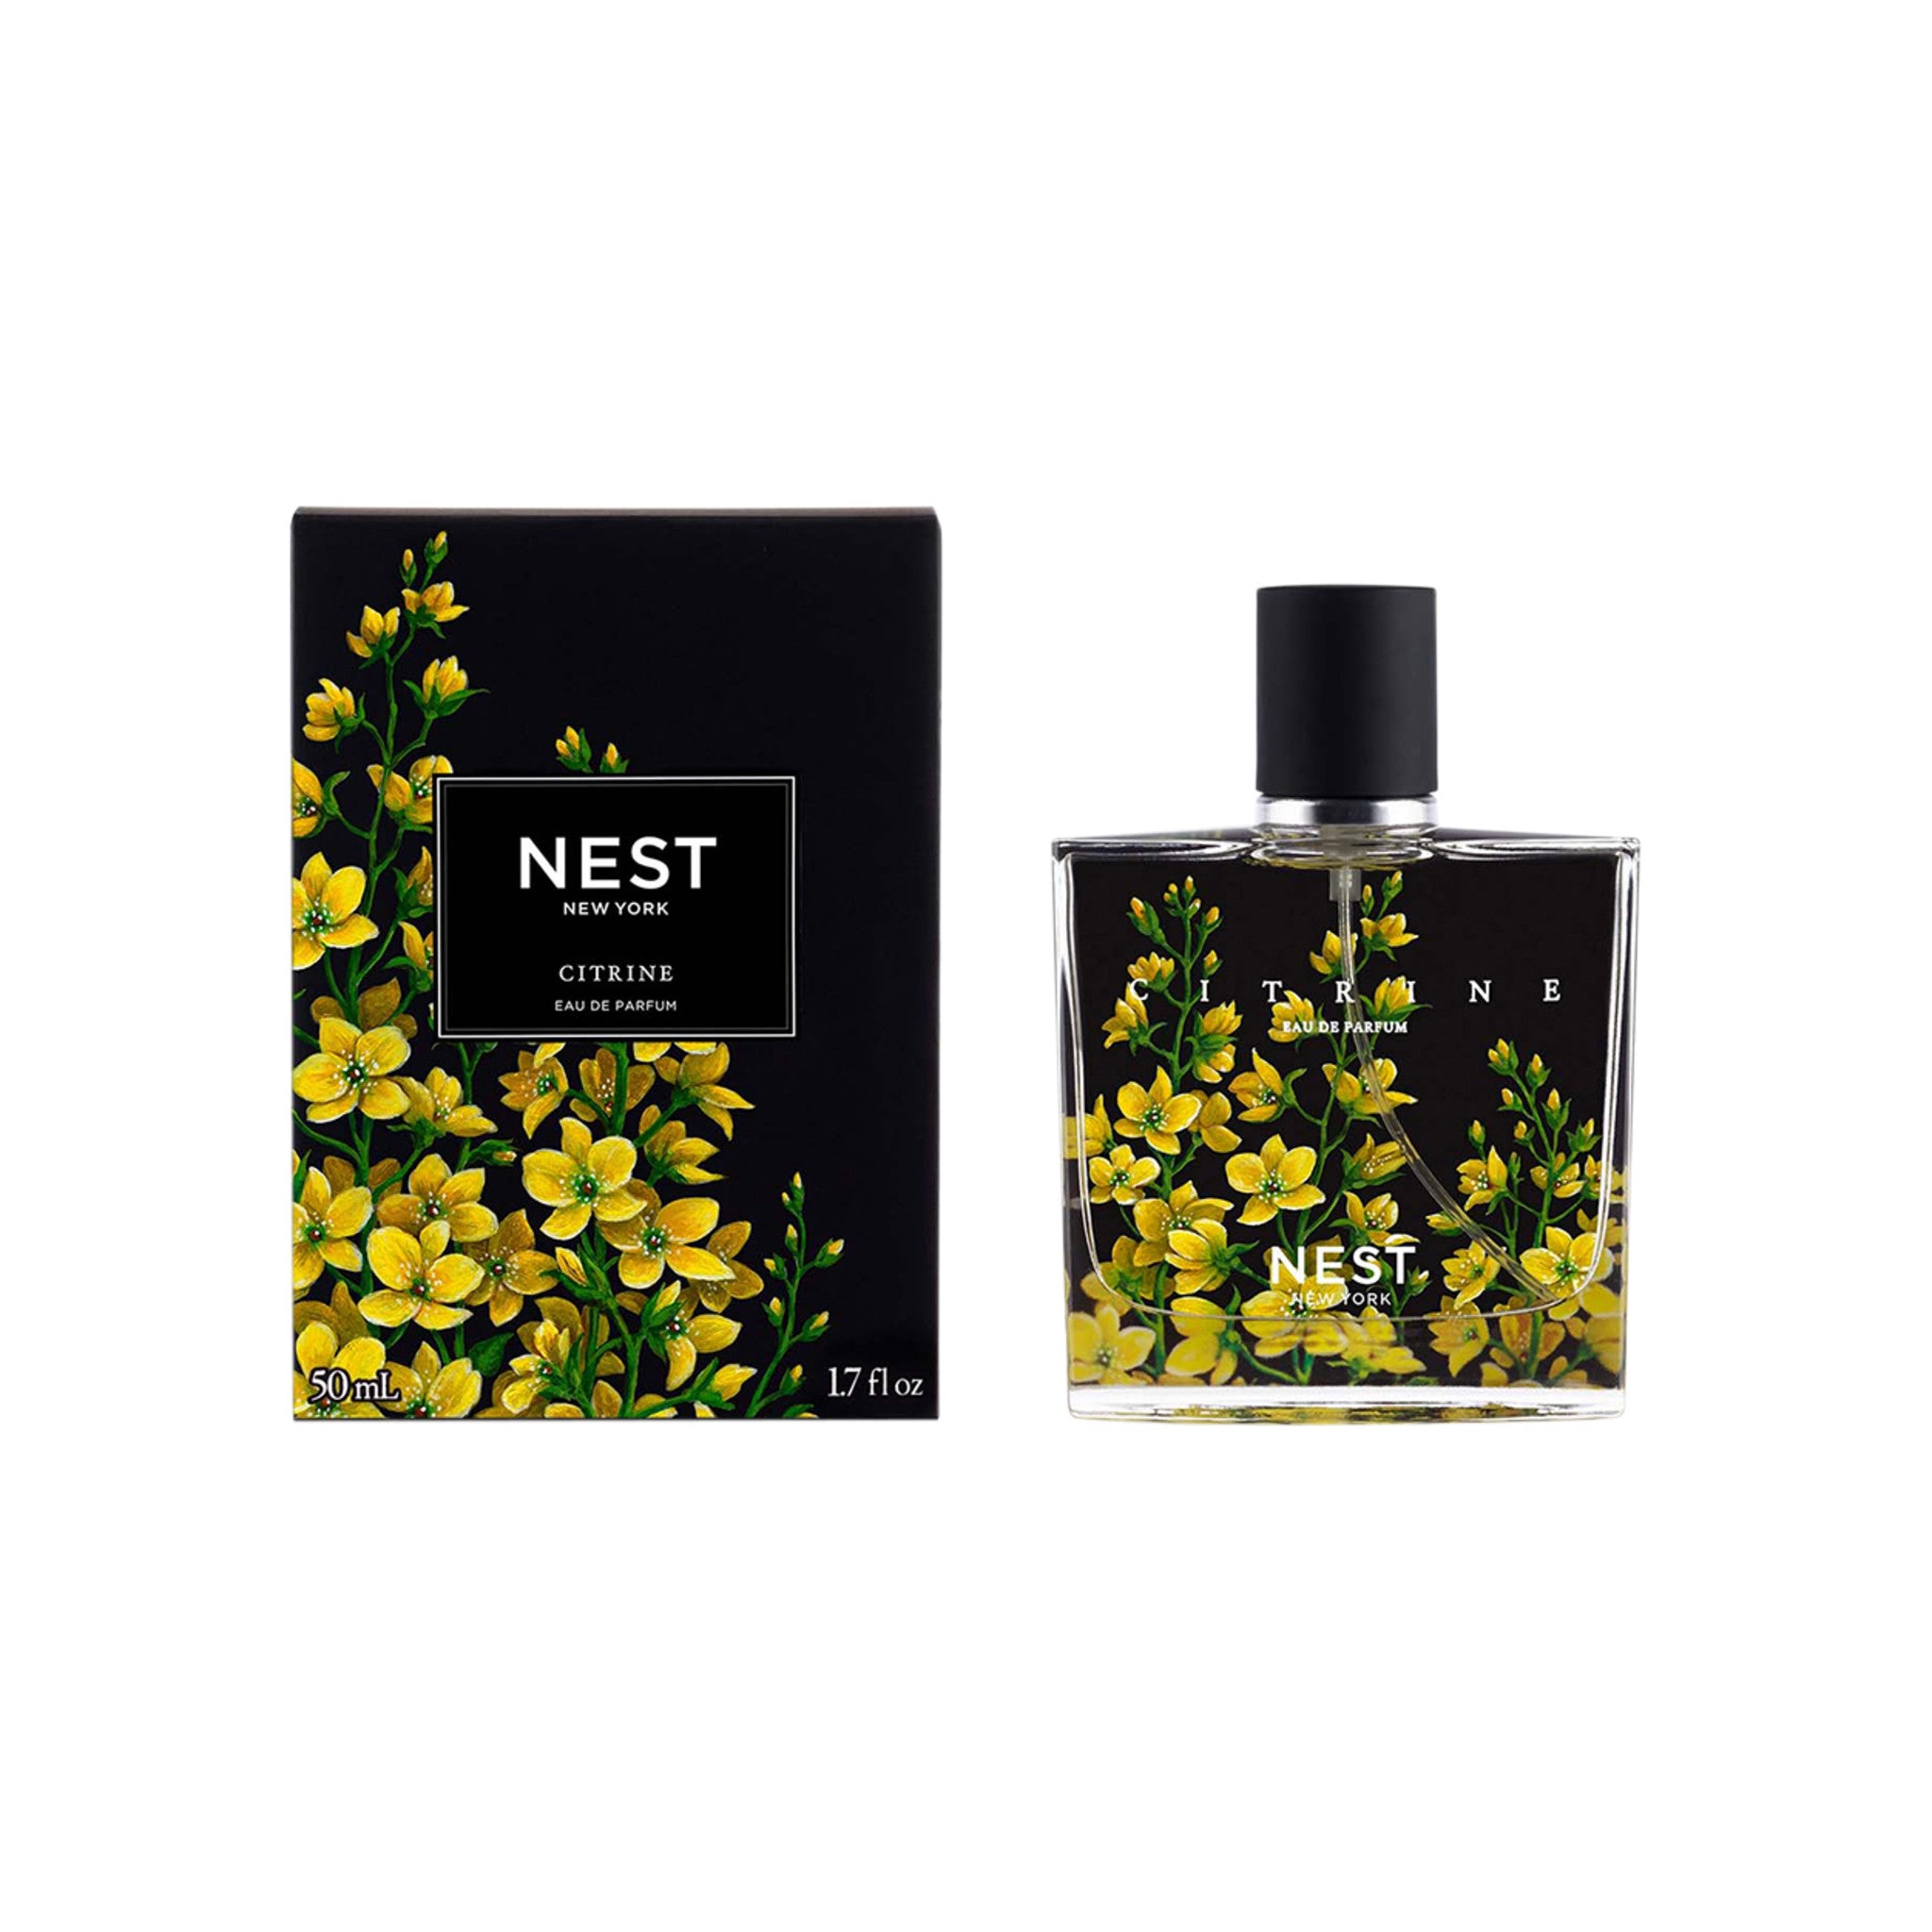 Nest Citrine Eau de Parfum Size variant: 50 ml main image.